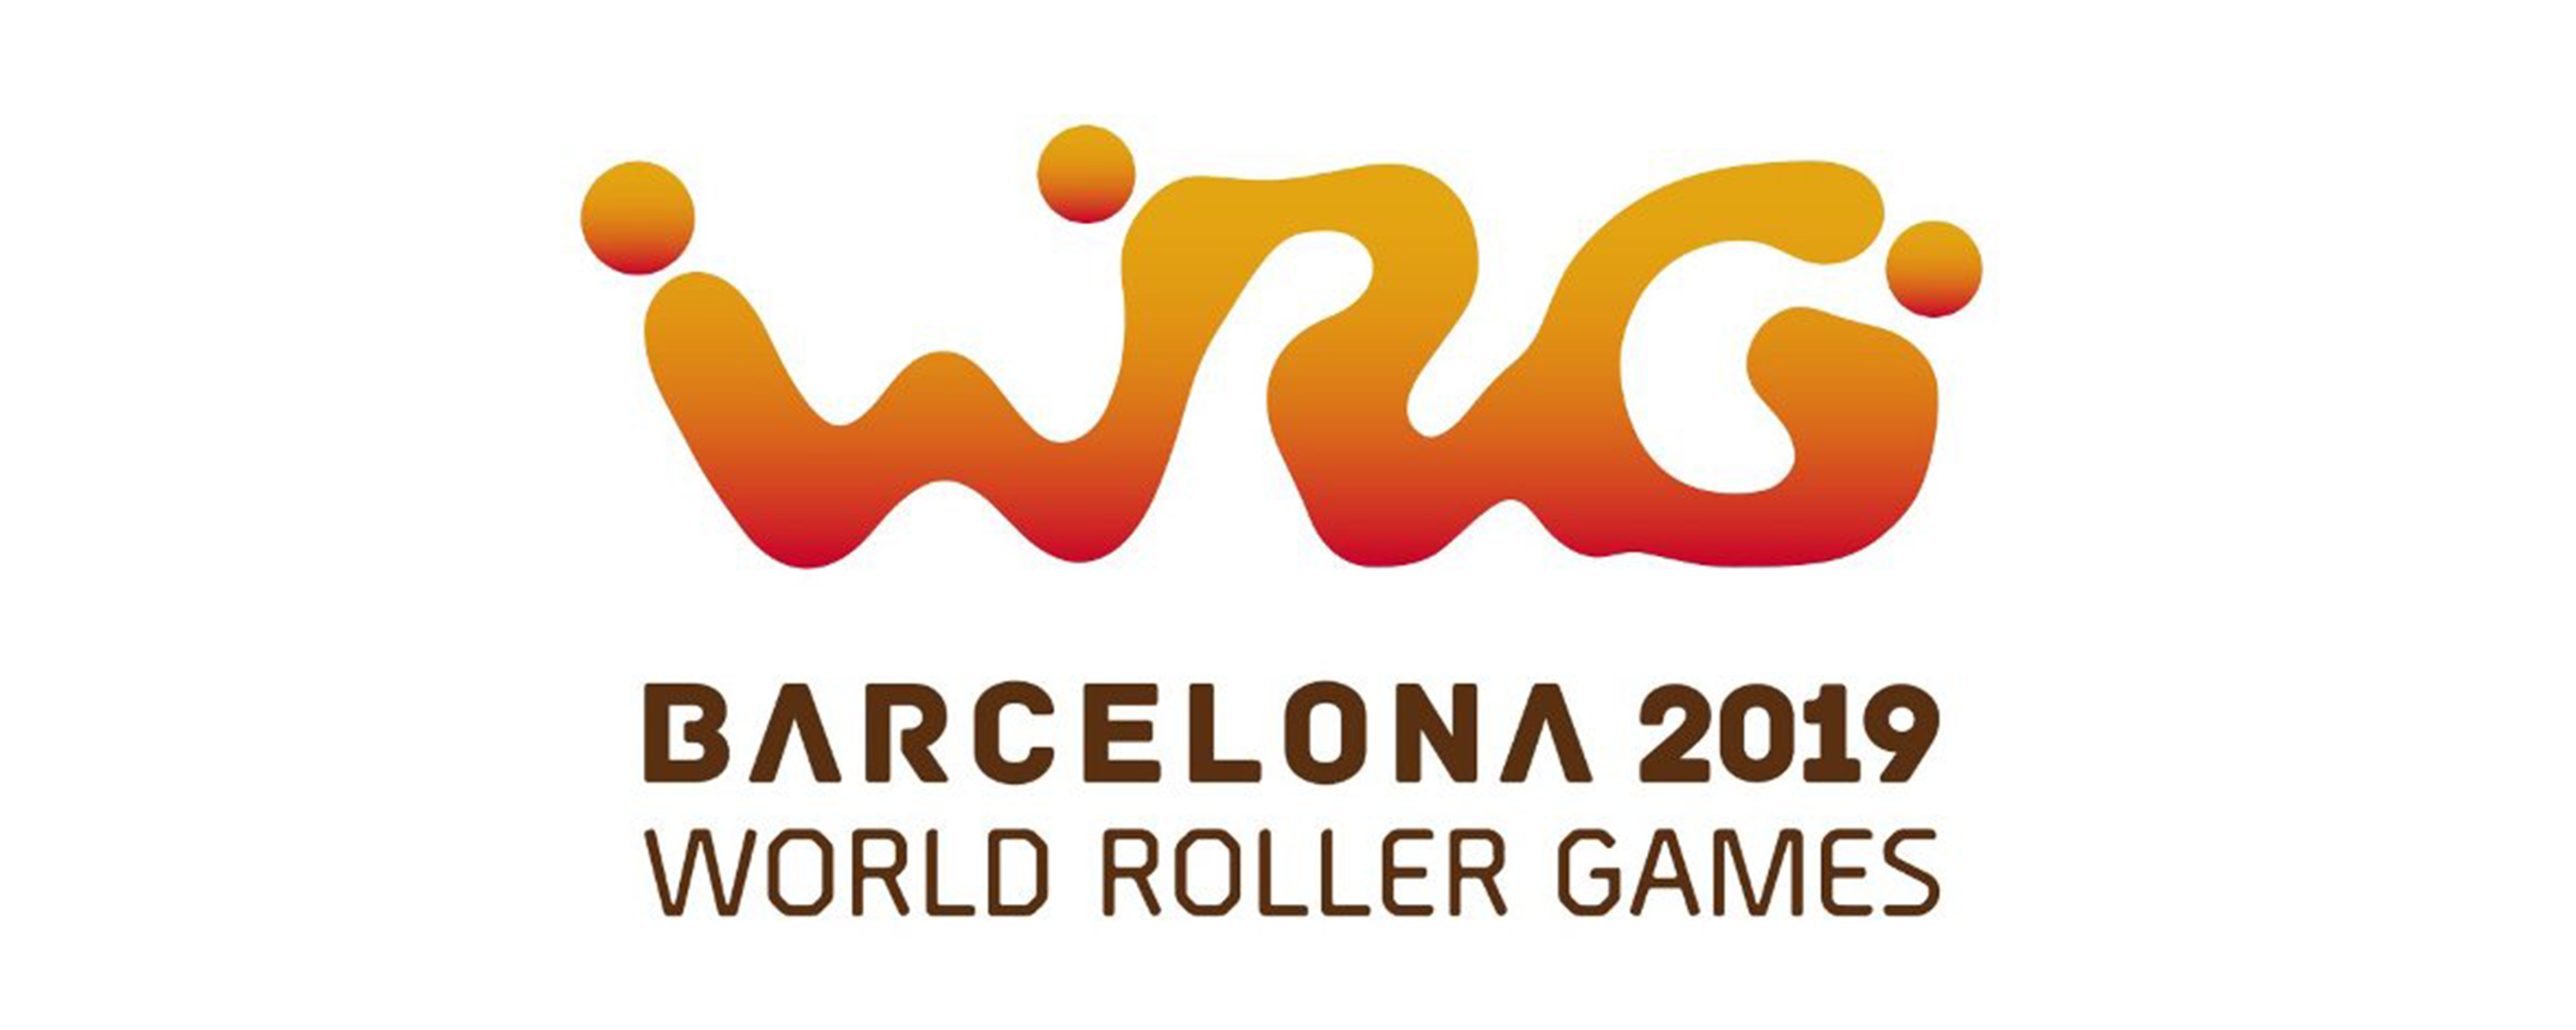 Barcelona World Roller Games 2019